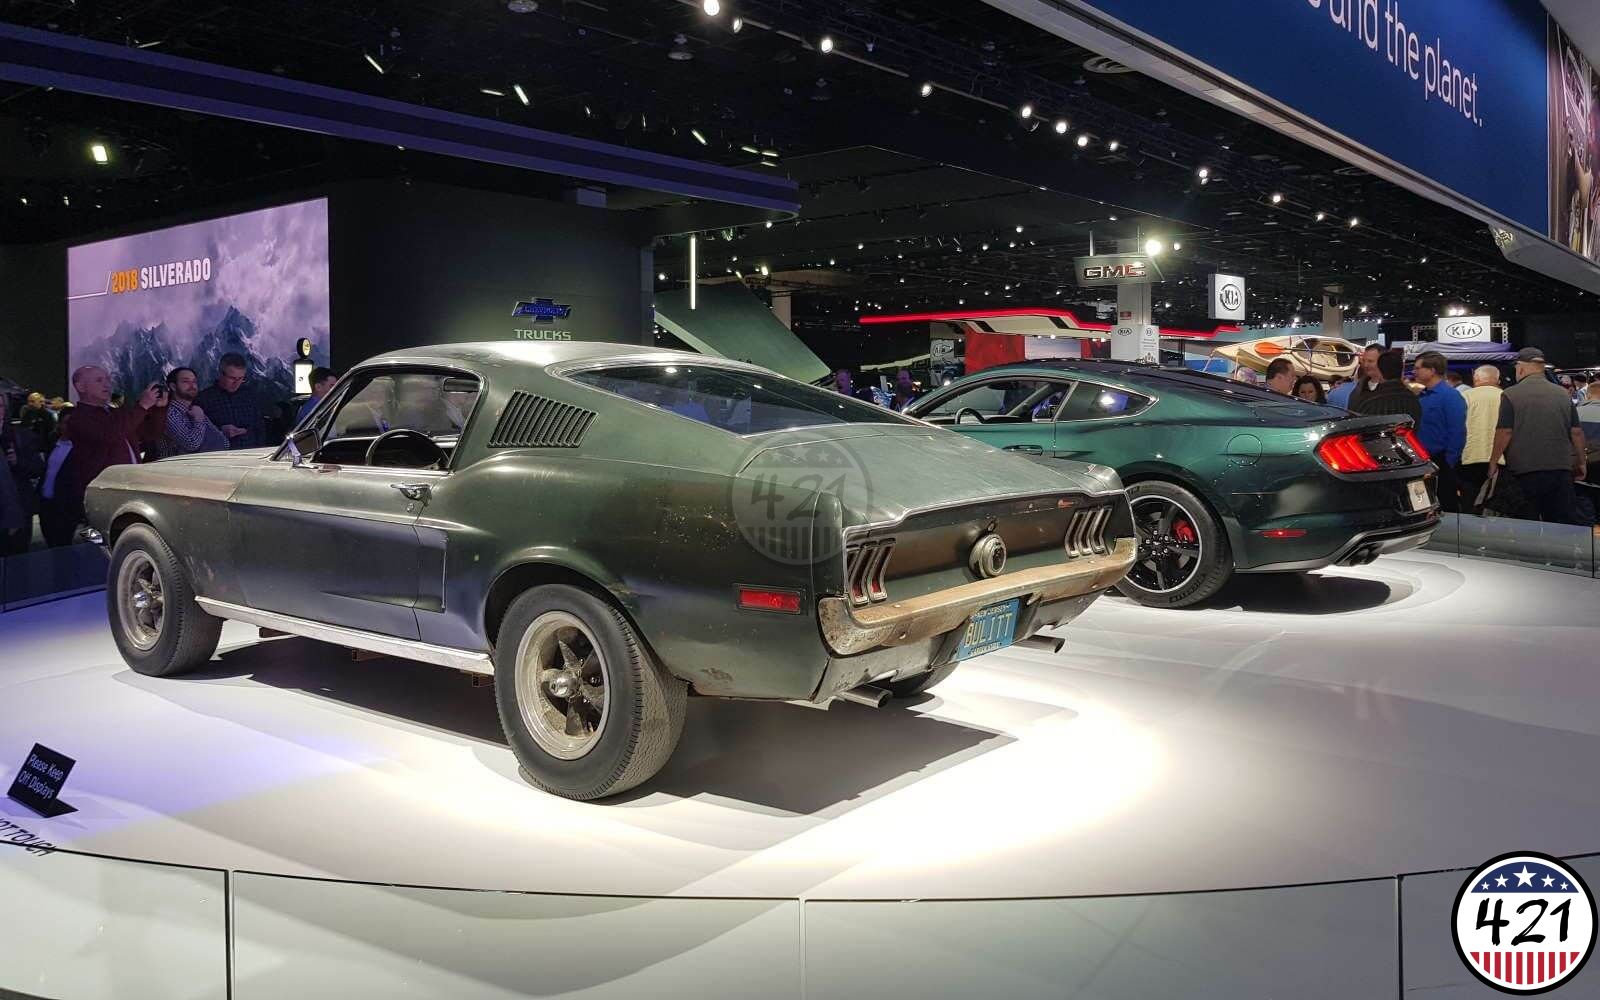 Real 1968 Ford Mustang Bullitt